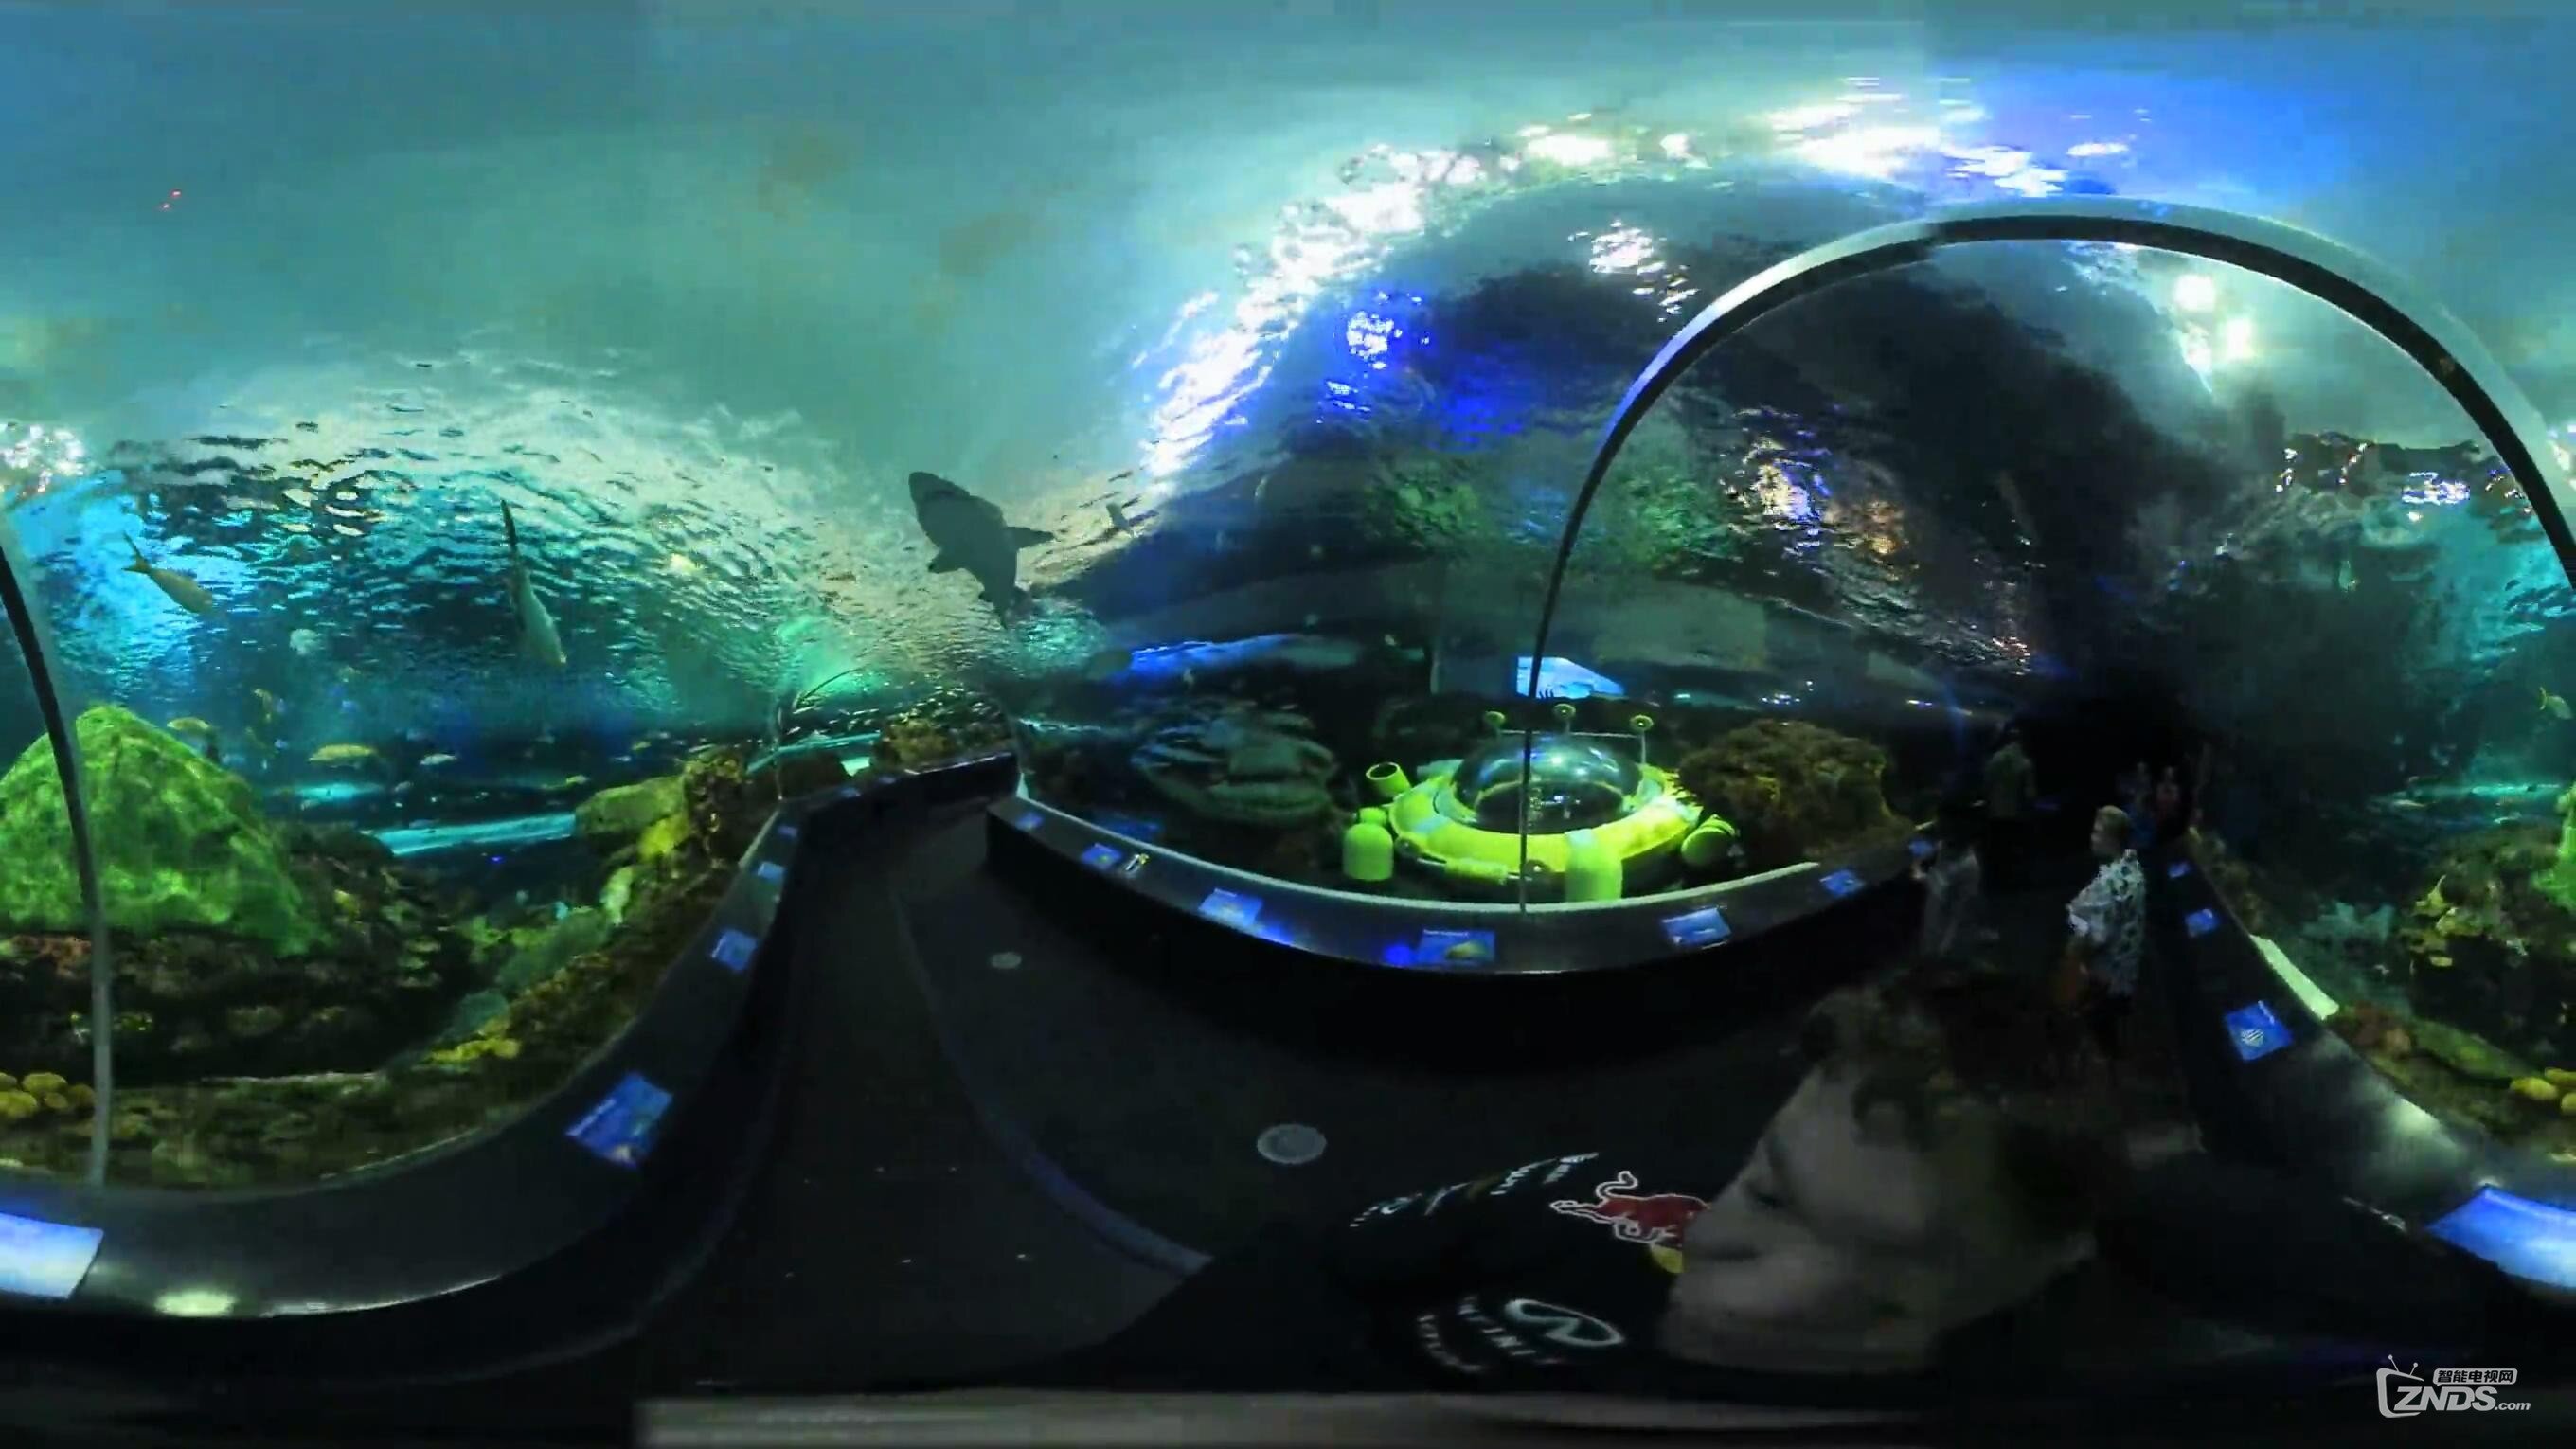 【VR带你游世界】瑞普利水族馆隧道@加拿大多伦多_20170116101607.JPG